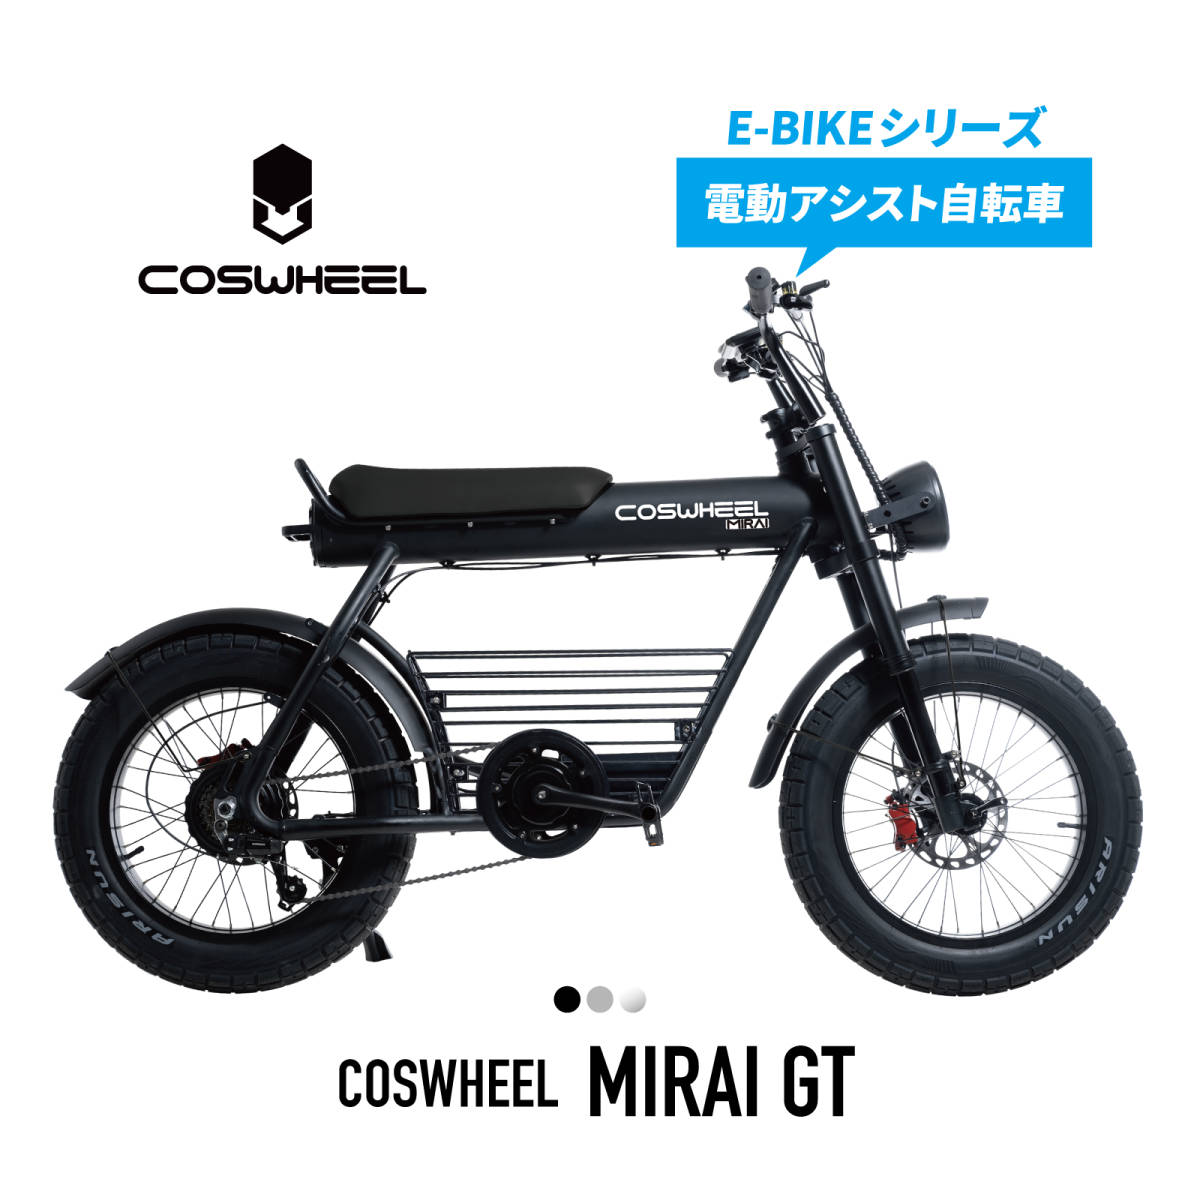 電動アシスト自転車 COSWHEEL MIRAI GT マットブラック アウトレット品